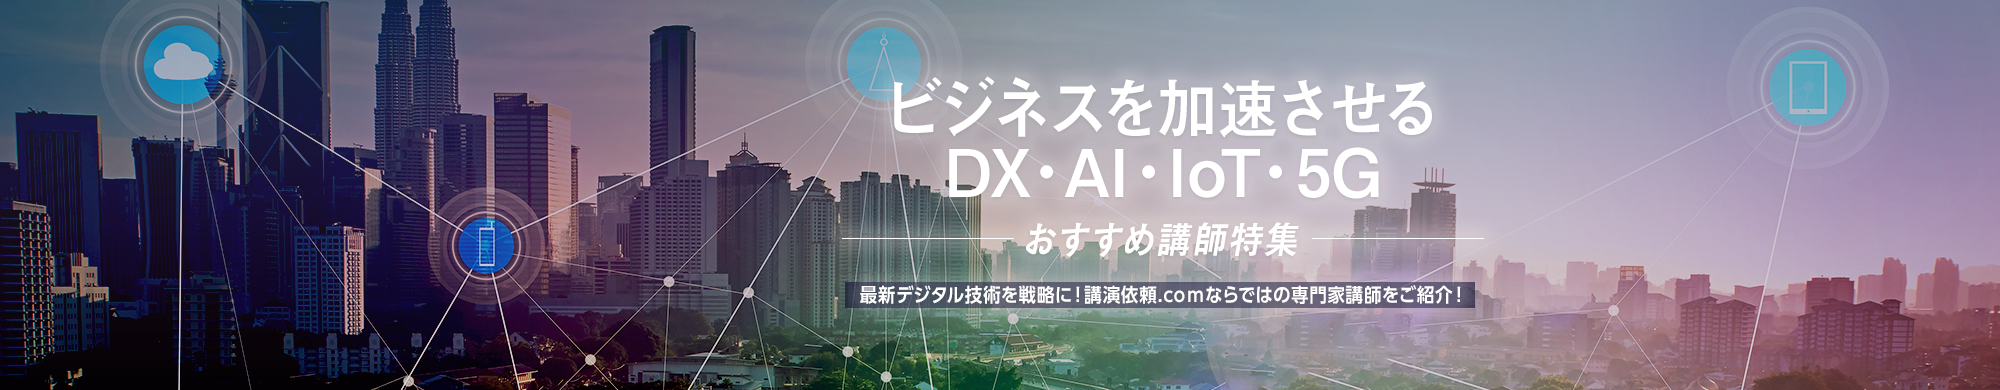 ビジネスを加速させるDX・AI・IoT・5G -おすすめ講師特集-